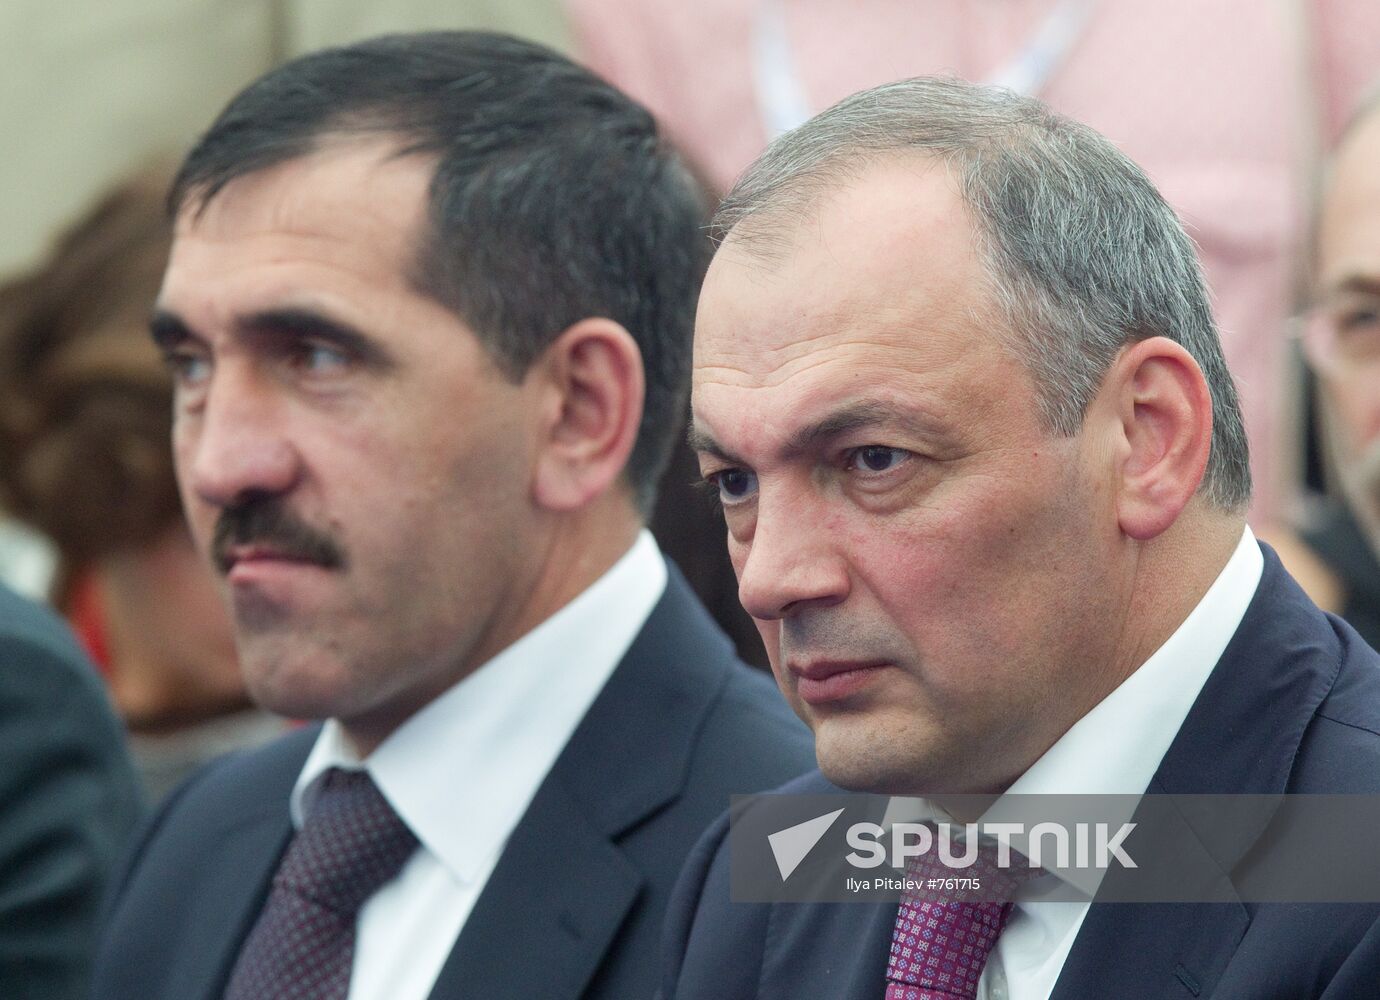 Magomedsalam Magomedov and Yunus-bek Yevkurov